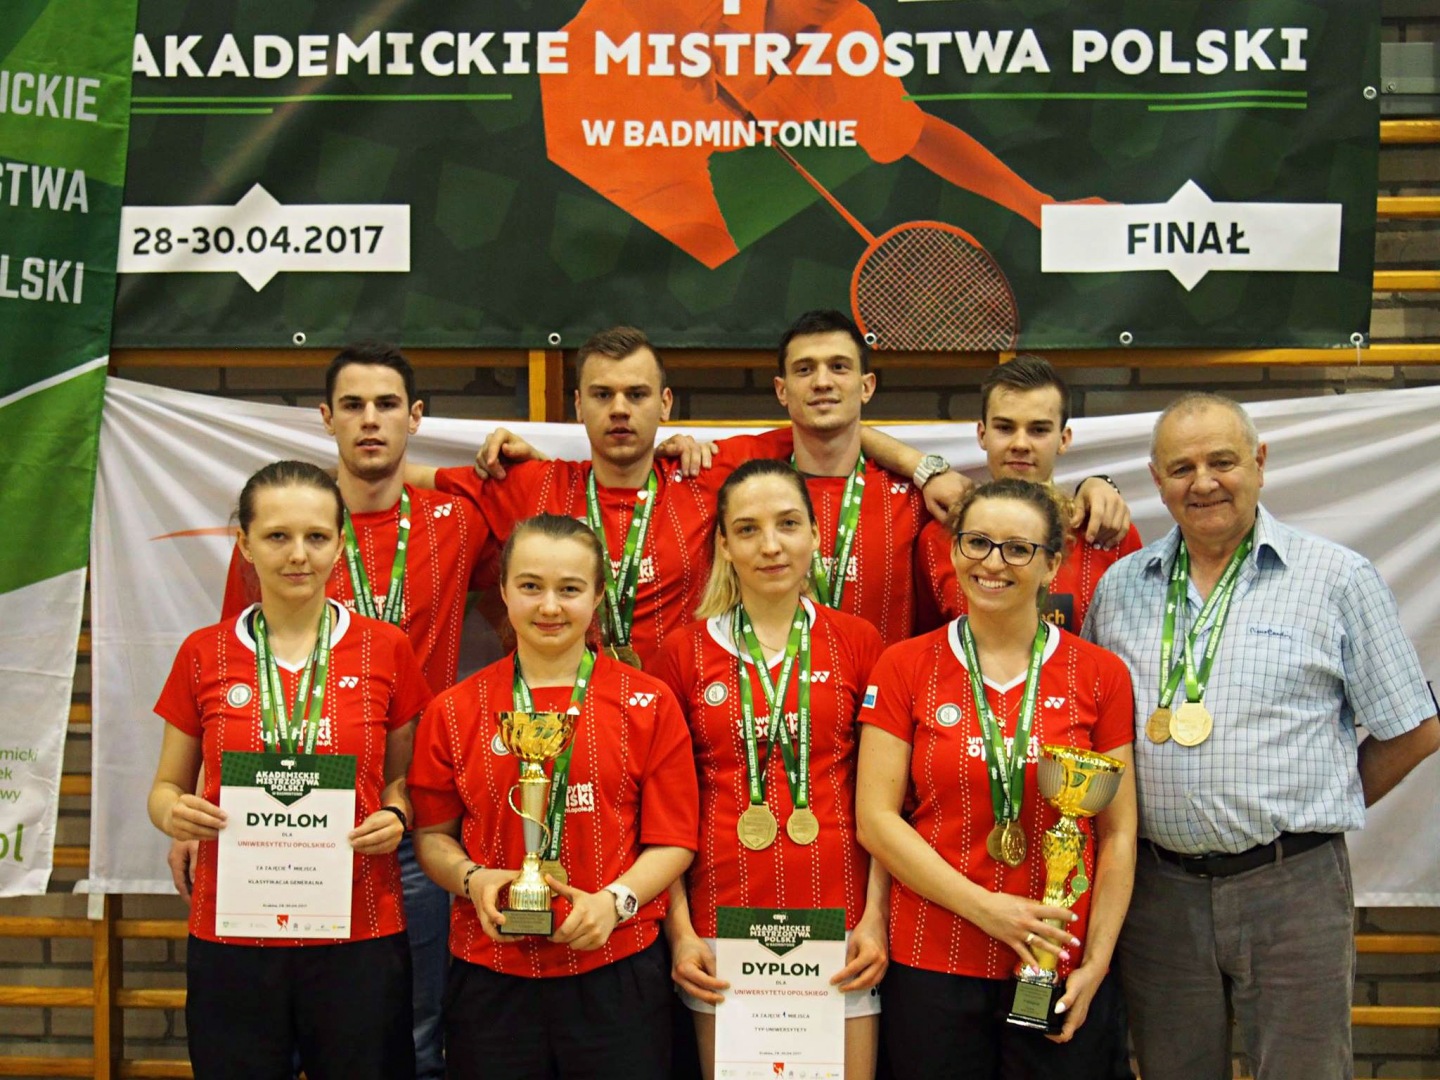 Tak! Czwarty raz z rzędu badmintoniści i badmintonistki Uniwersytetu Opolskiego zostali Akademickimi Mistrzami Polski. W finale pokonaliśmy Uniwersytet Warszawski